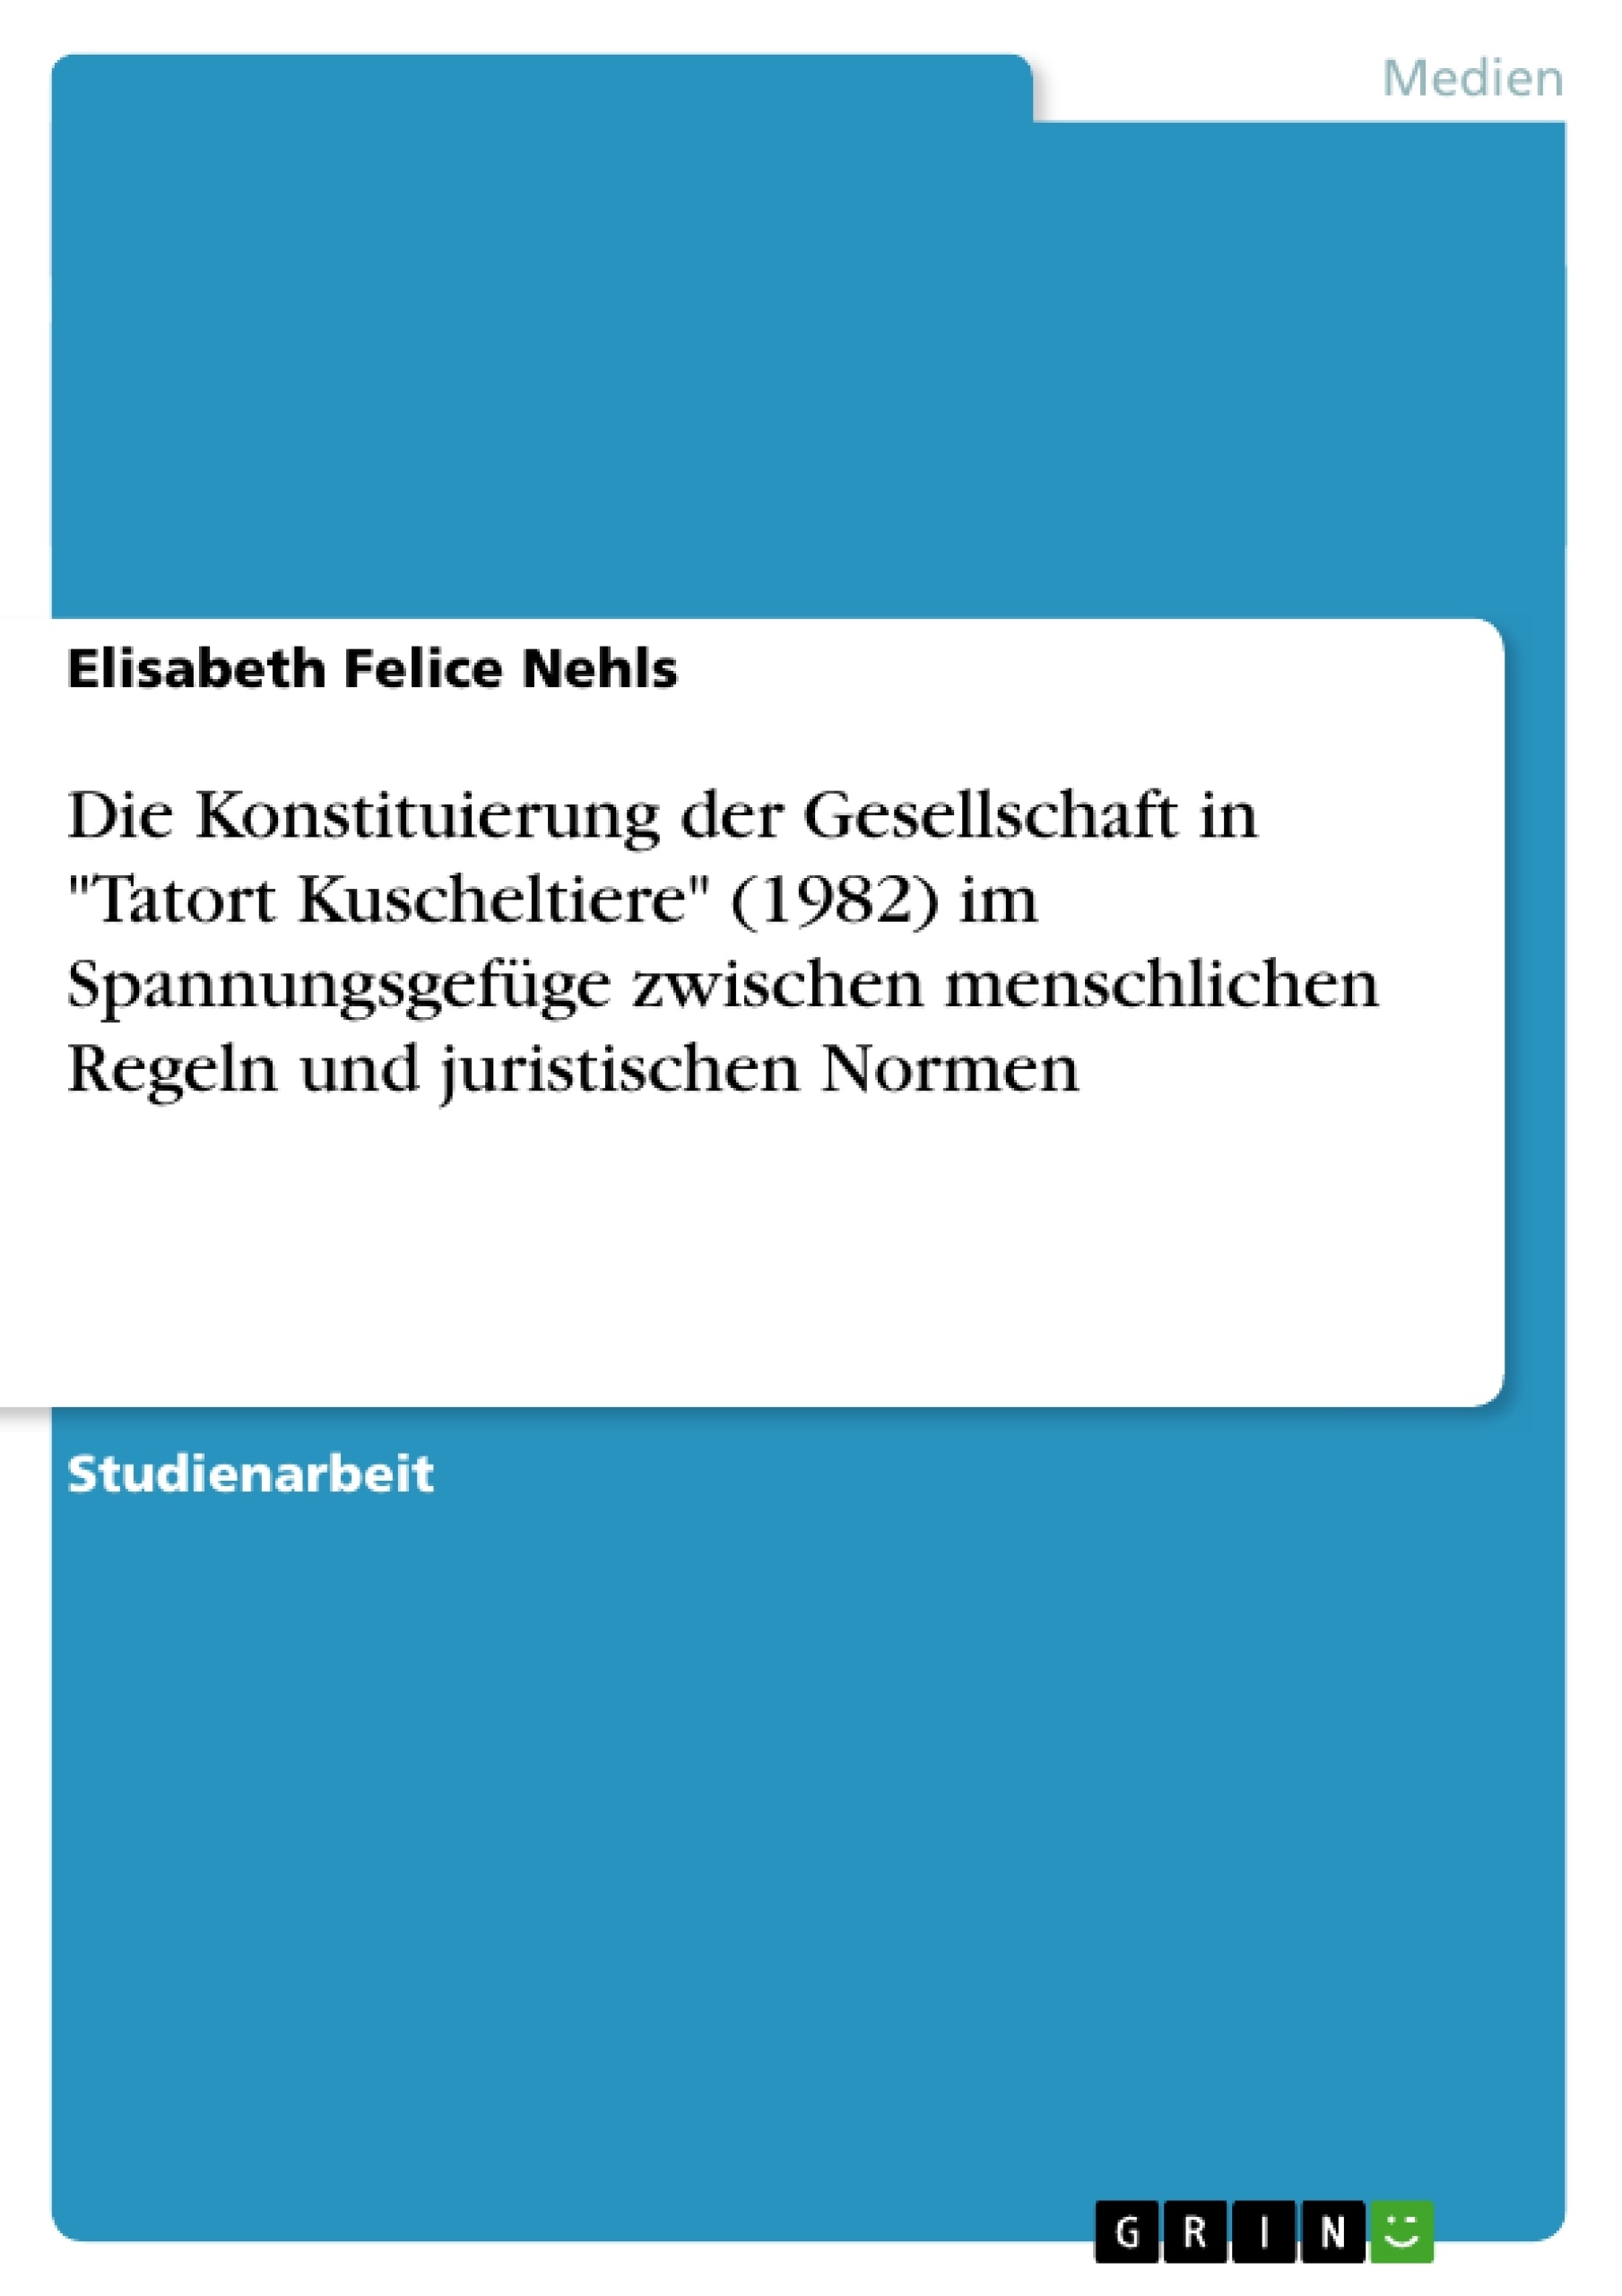 Título: Die Konstituierung der Gesellschaft in "Tatort Kuscheltiere" (1982) im Spannungsgefüge zwischen menschlichen Regeln und juristischen Normen  